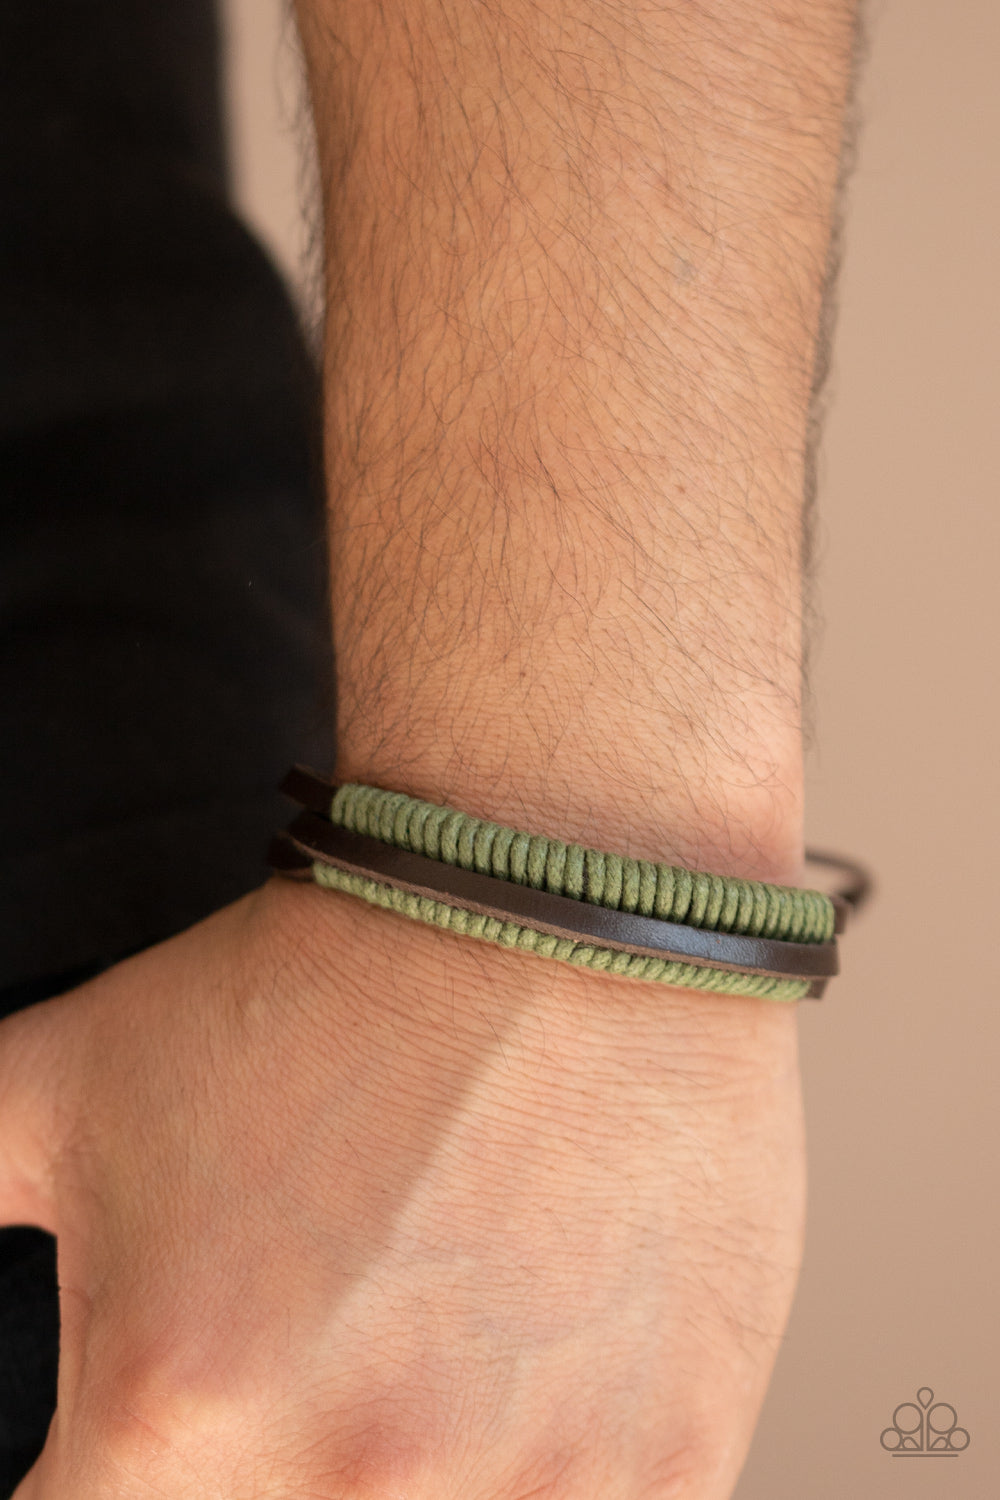 Rugged Roper Green
Bracelet